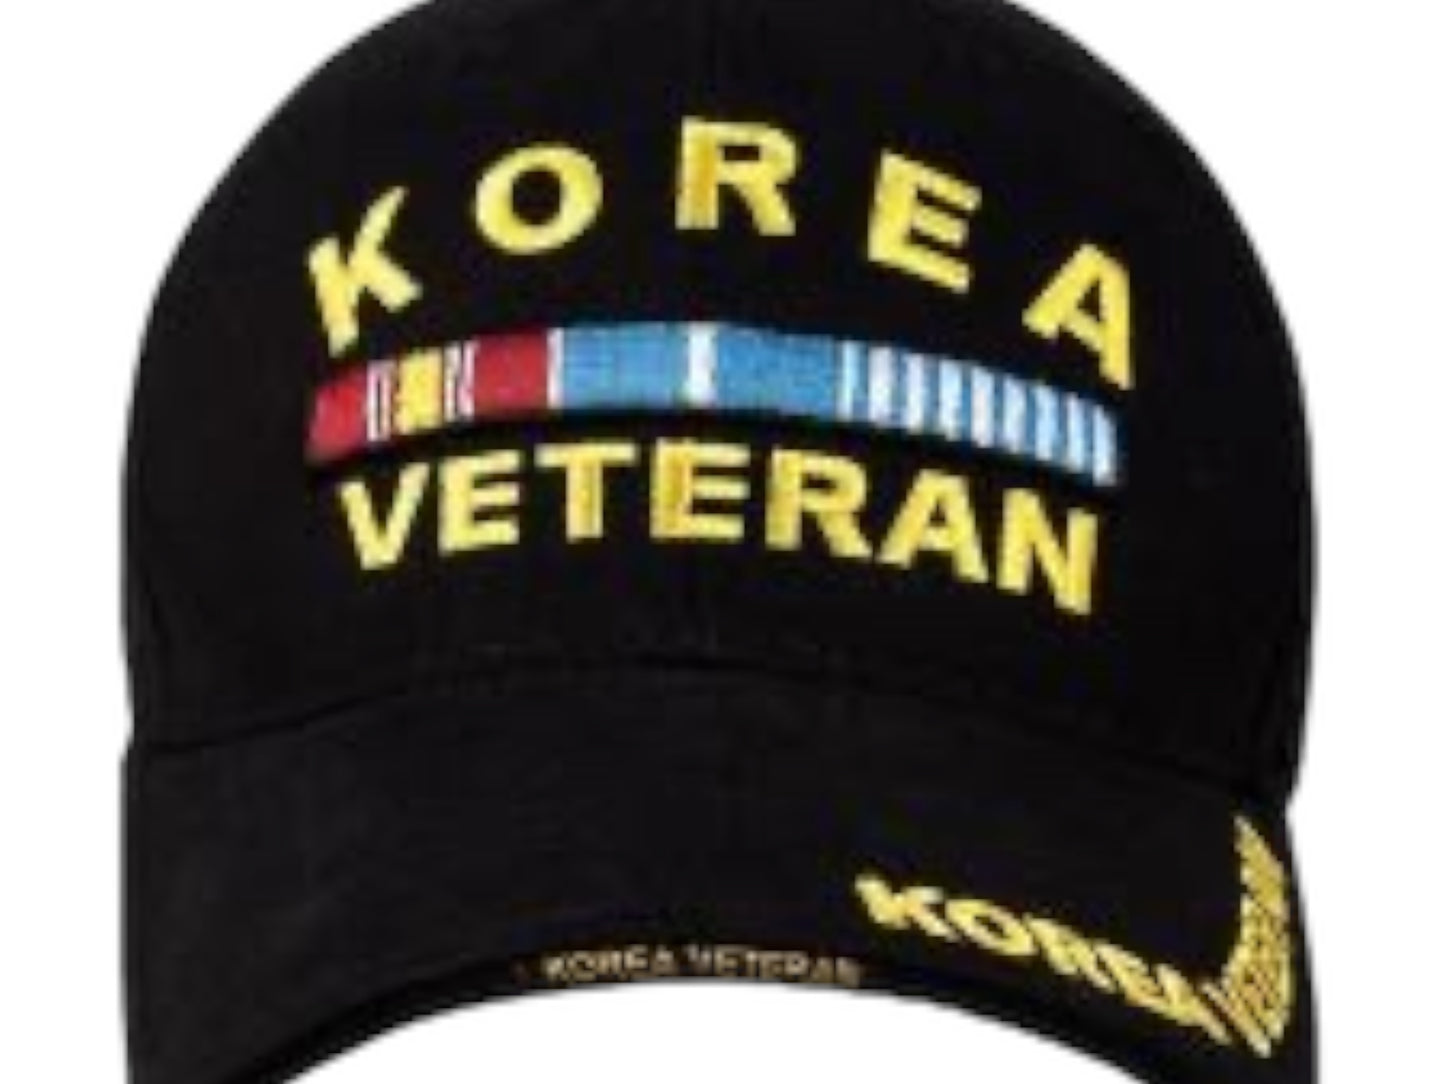 Rothco Custom Made Korea Veteran Embroidered Deluxe Korea Veteran Low Profile Insignia Cap Military Veteran Hat